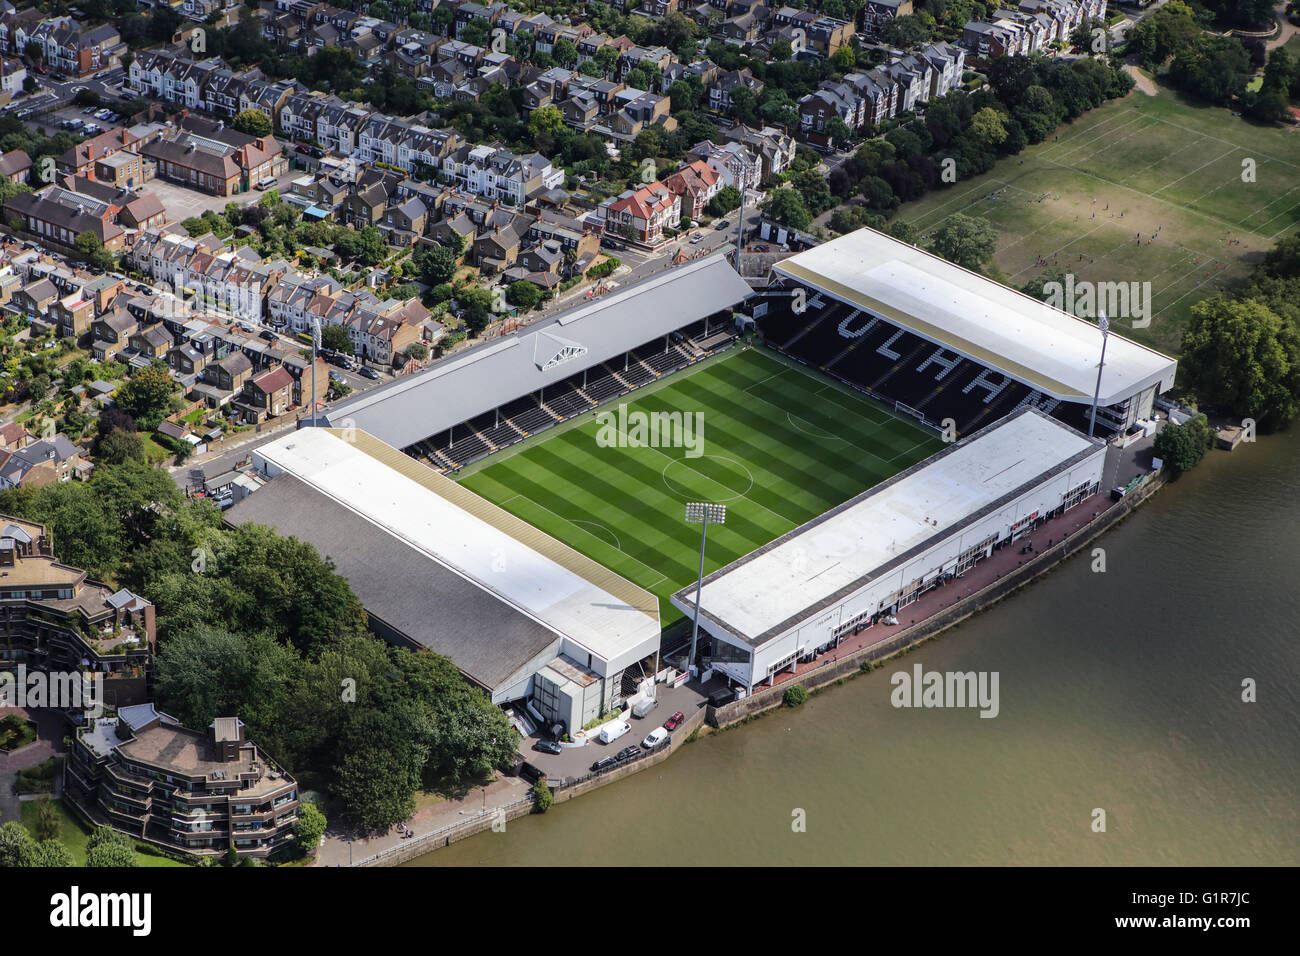 Une vue aérienne de Craven Cottage, accueil de Fulham Football Club Banque D'Images